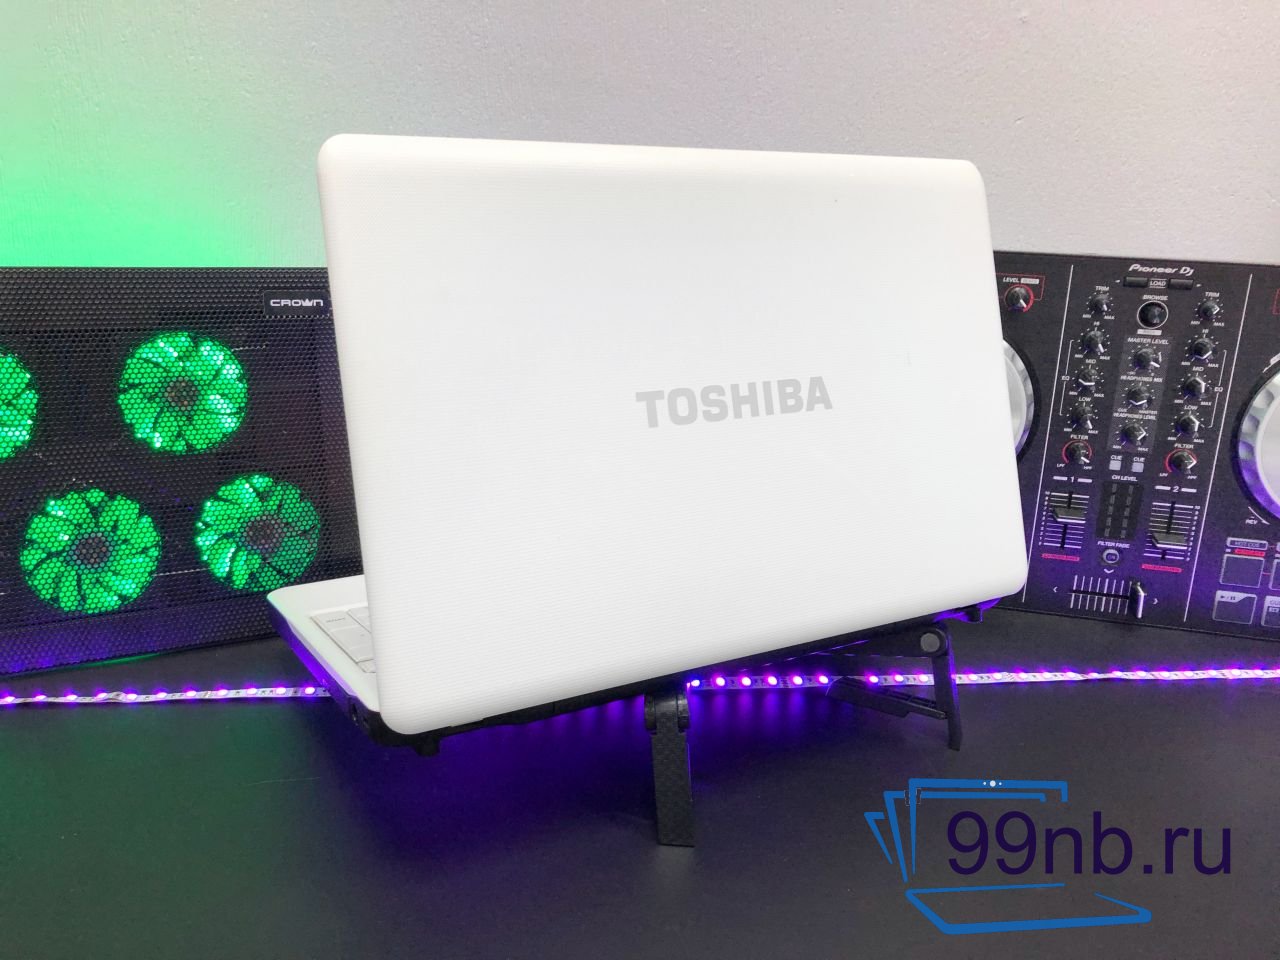  Ноутбук Toshiba на i5 для учебы